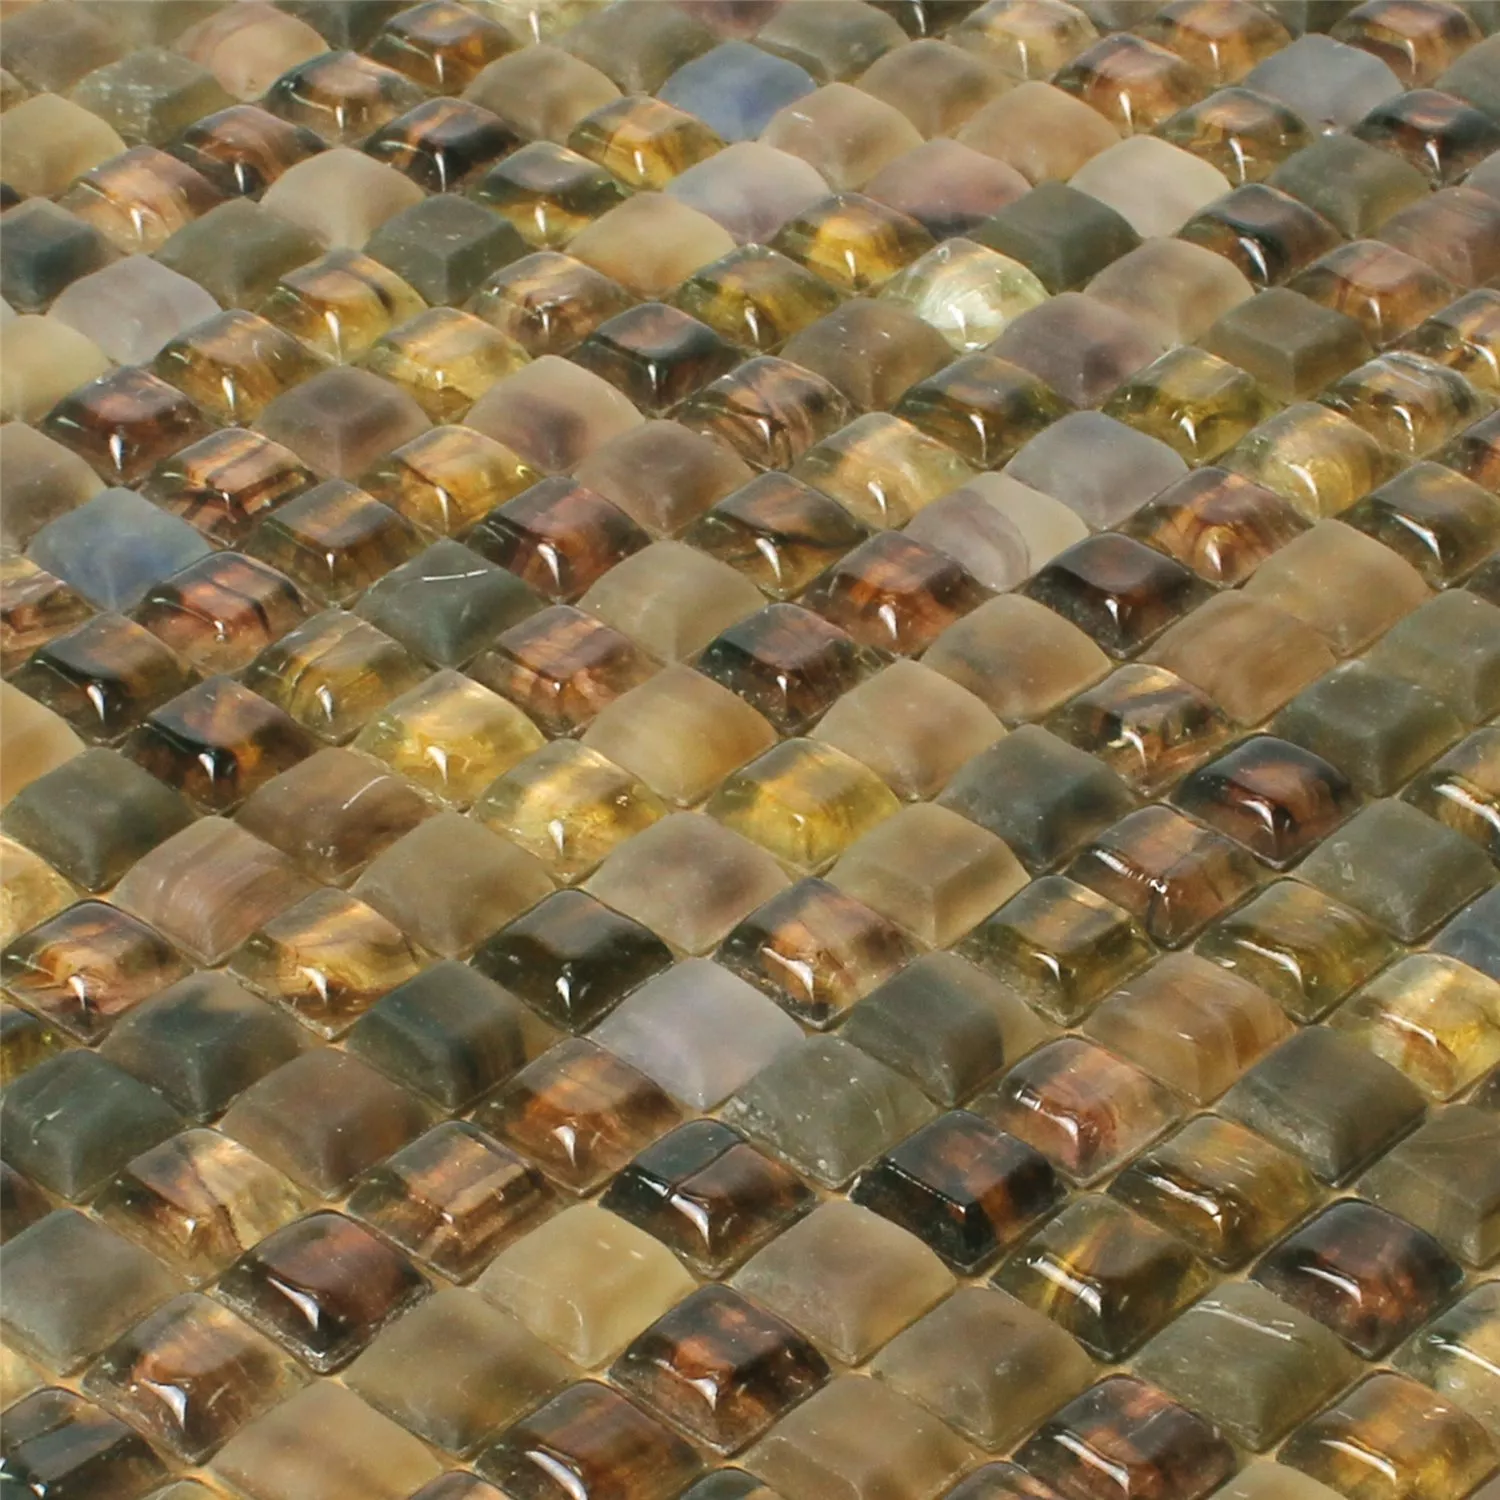 Sample Glass Swimming Pool Mosaic Tiles Pergamon Brown